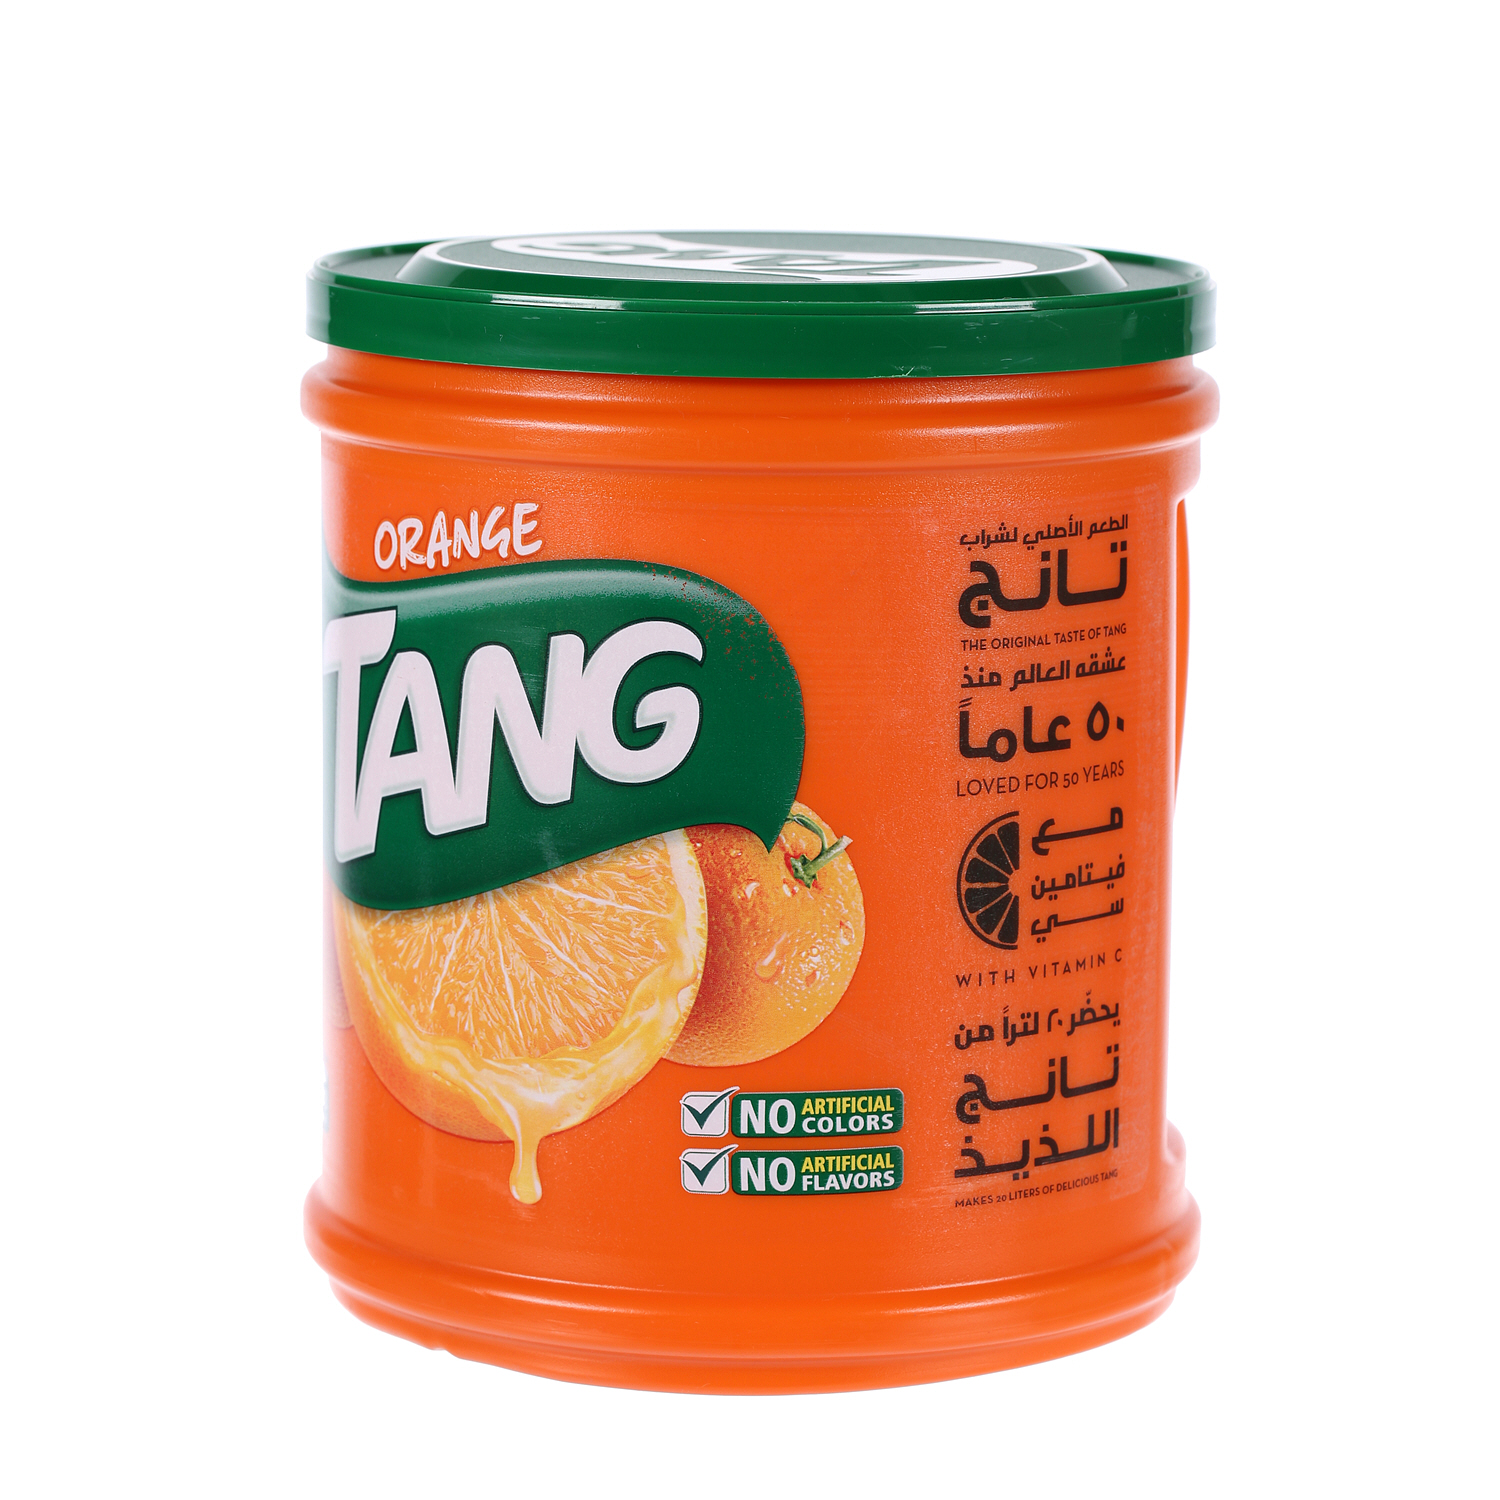 Tang Instant Drink Orange 2.5Kg